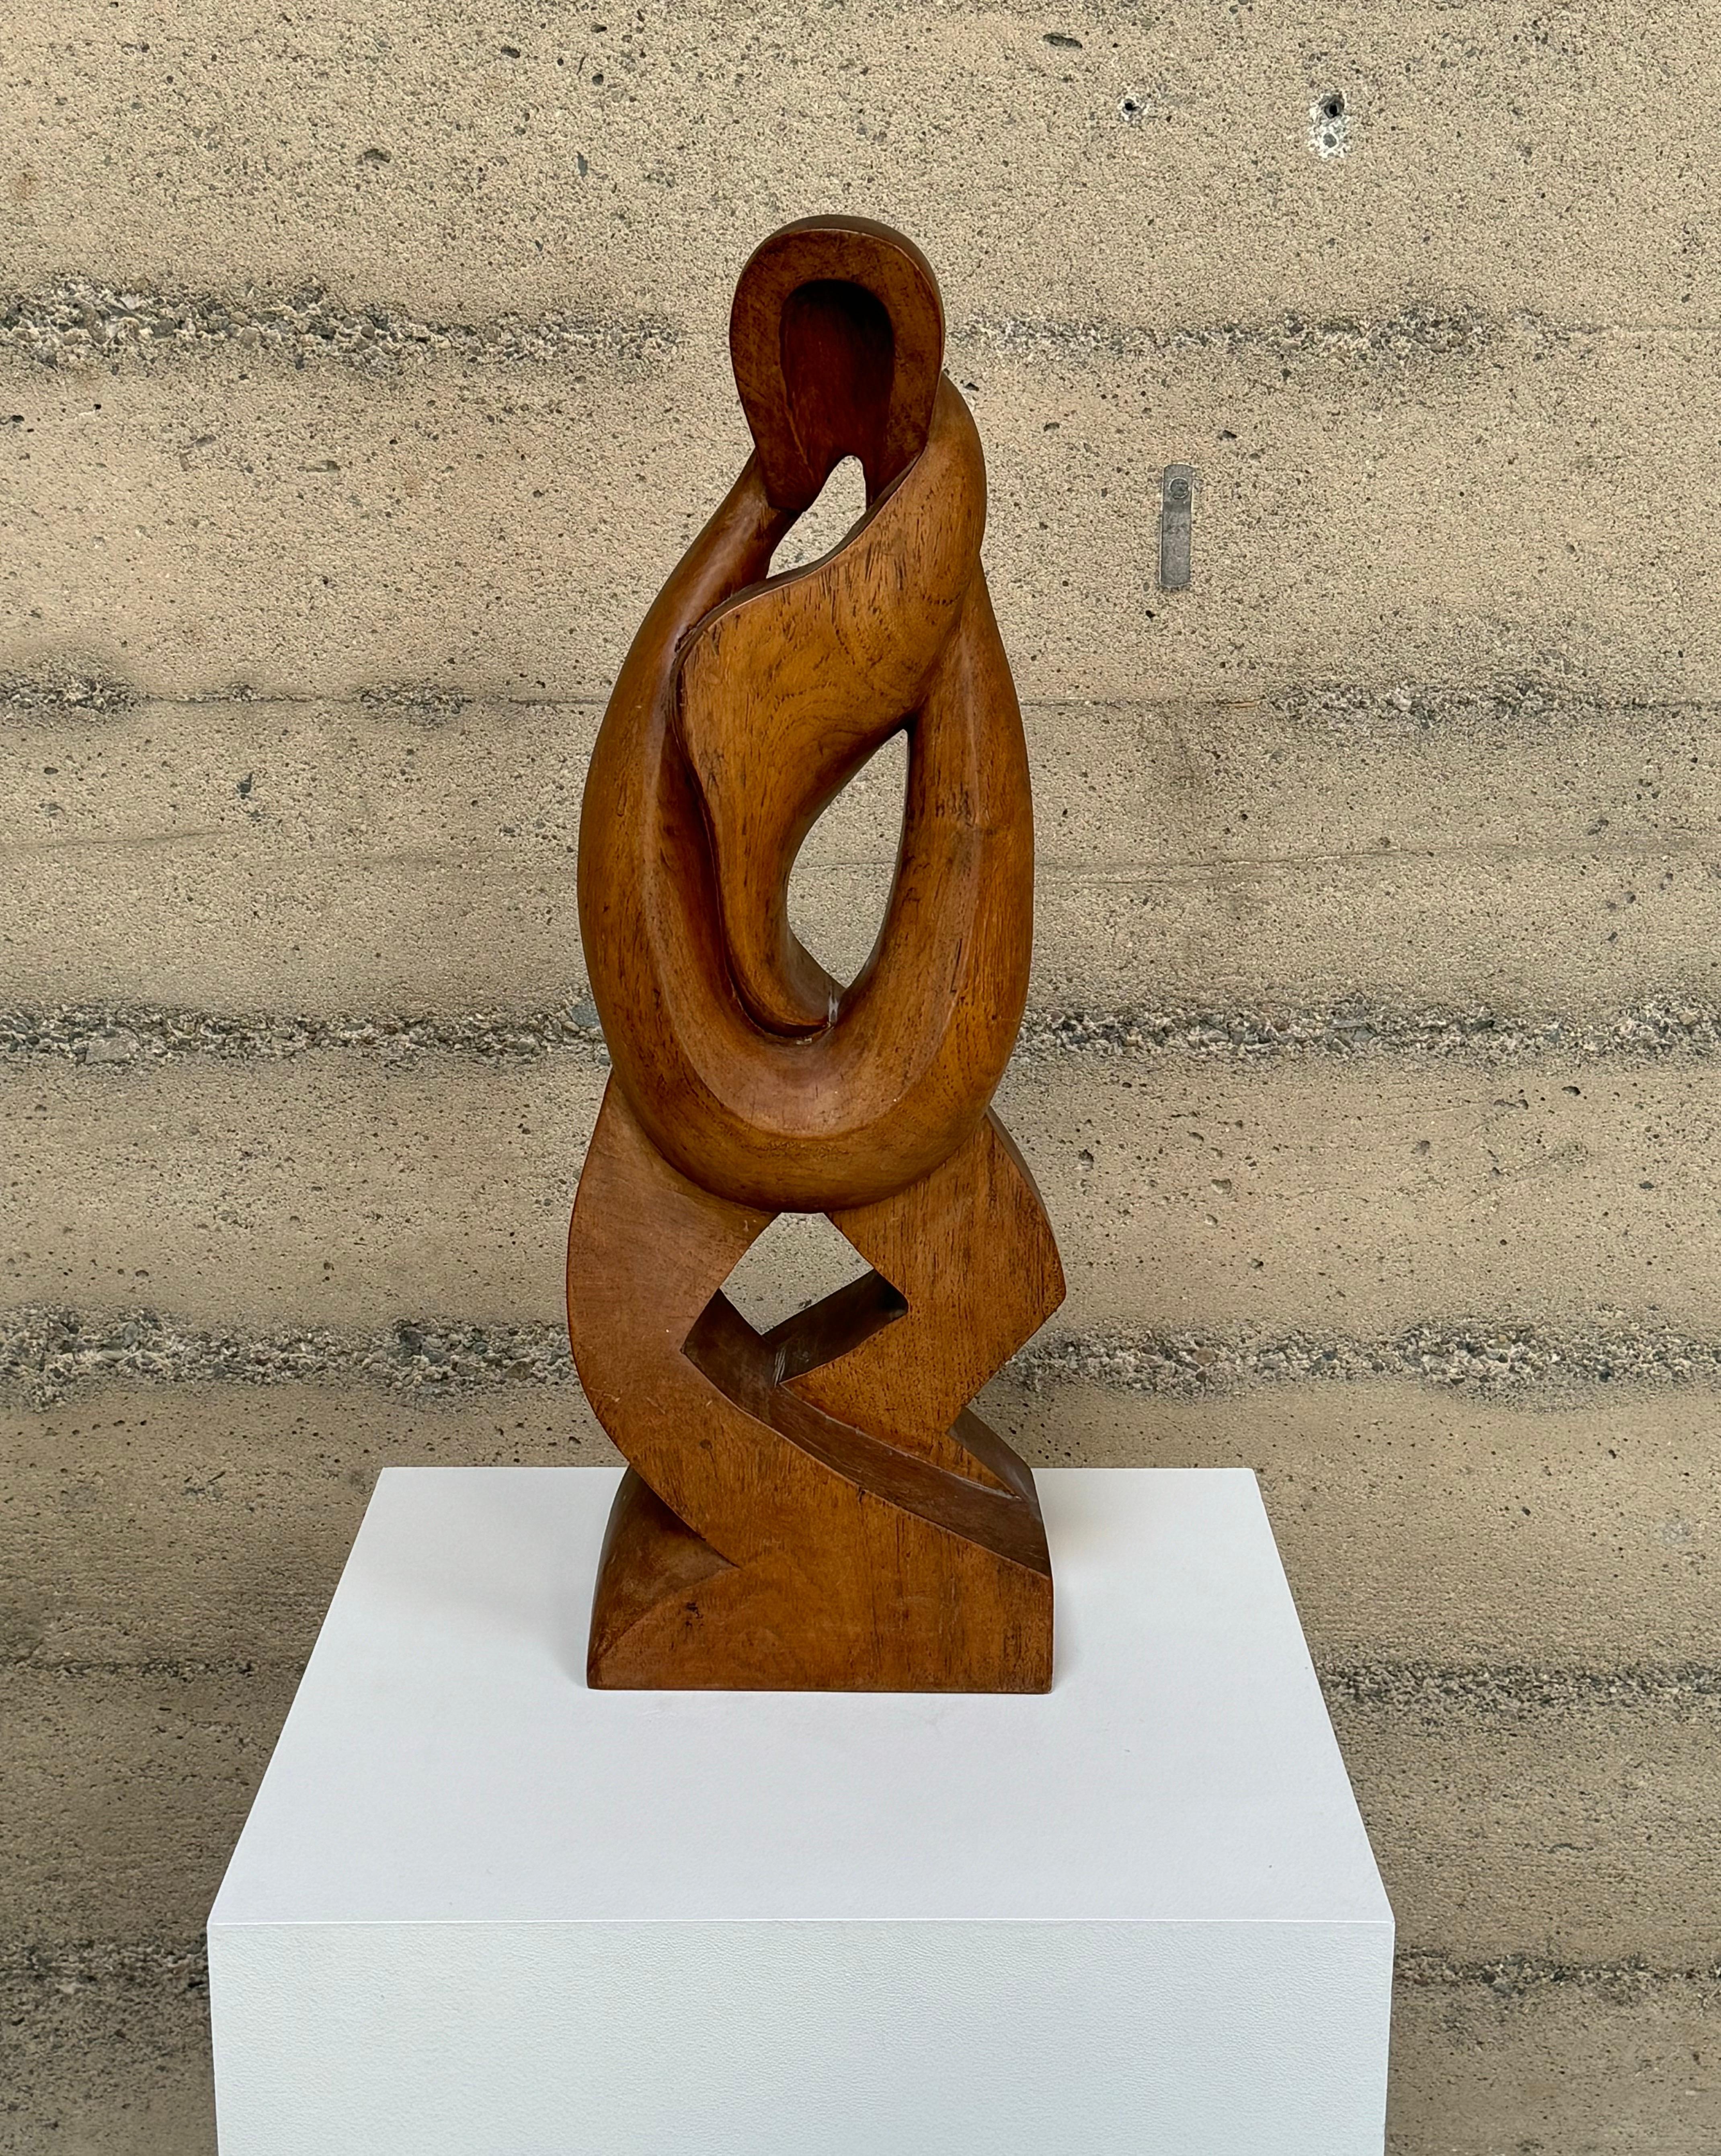 Sculpture abstraite figurative moderniste des années 1950 en noyer, sculptée à la main. Une forme symétrique avec un mouvement fluide dans sa forme, commençant par le haut et avec son point culminant à sa large base, avec un beau veinage du noyer.